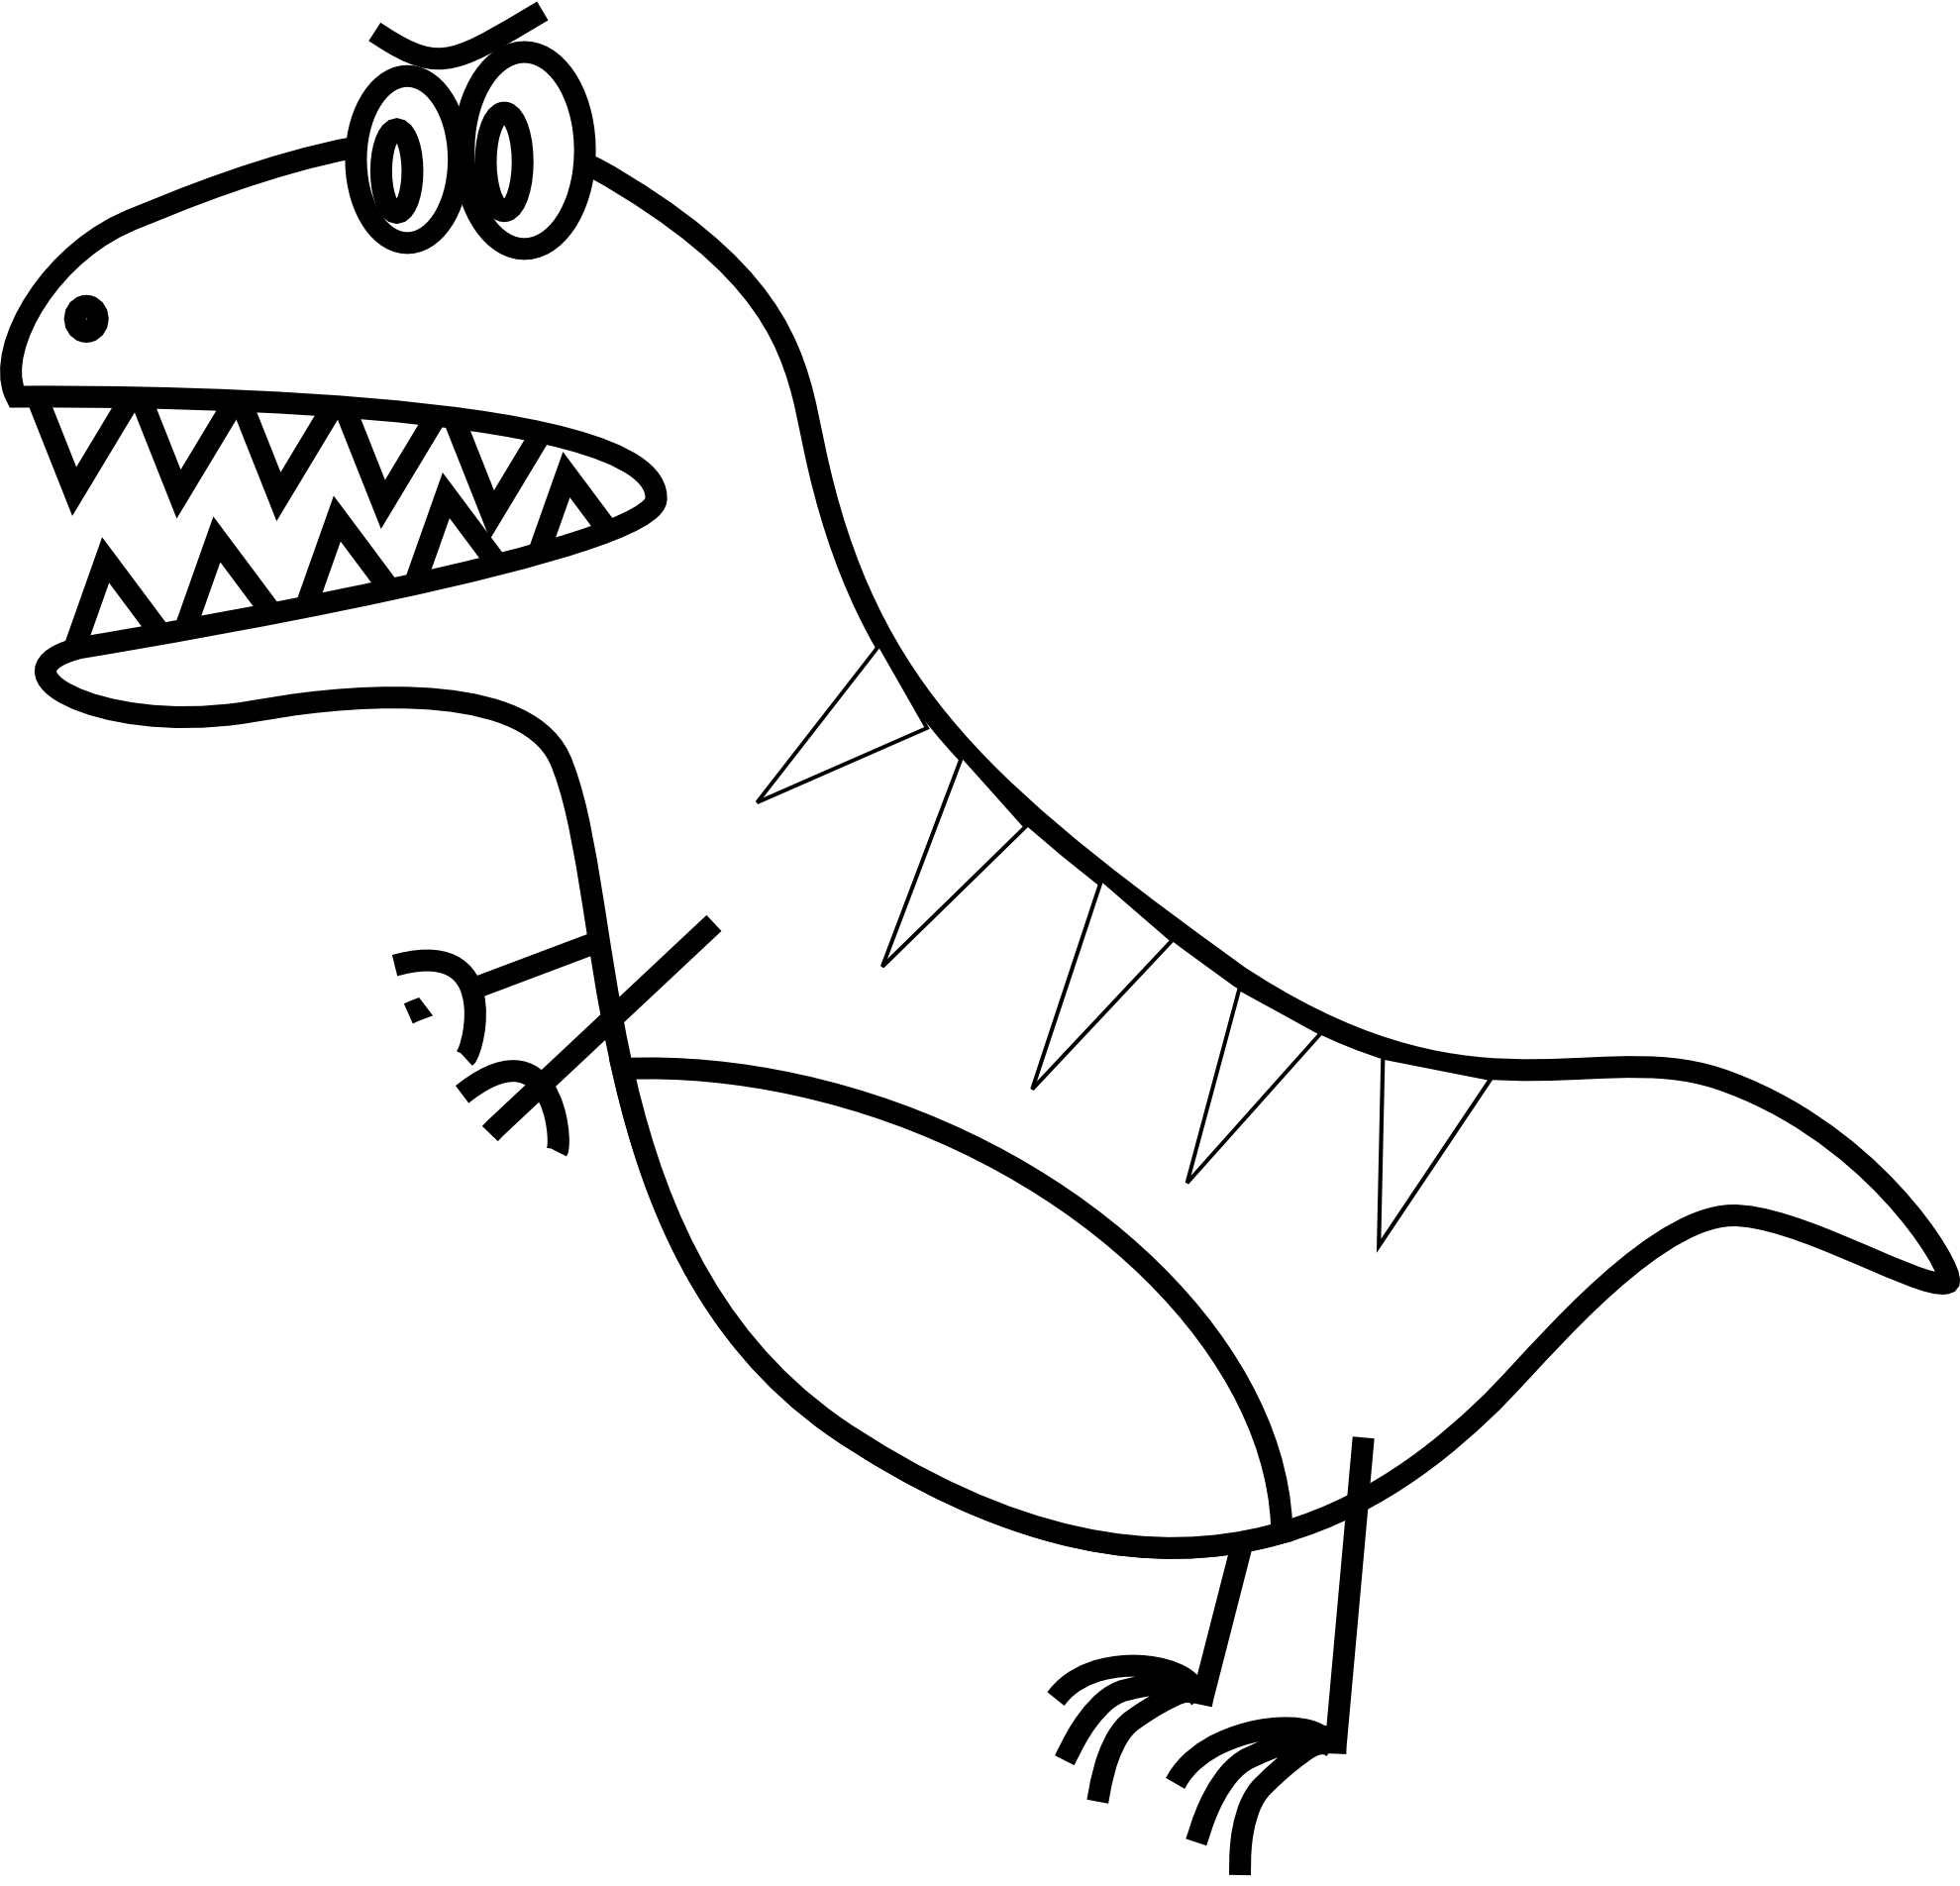 Dinosaur skeleton clip art. Win clipart drawing